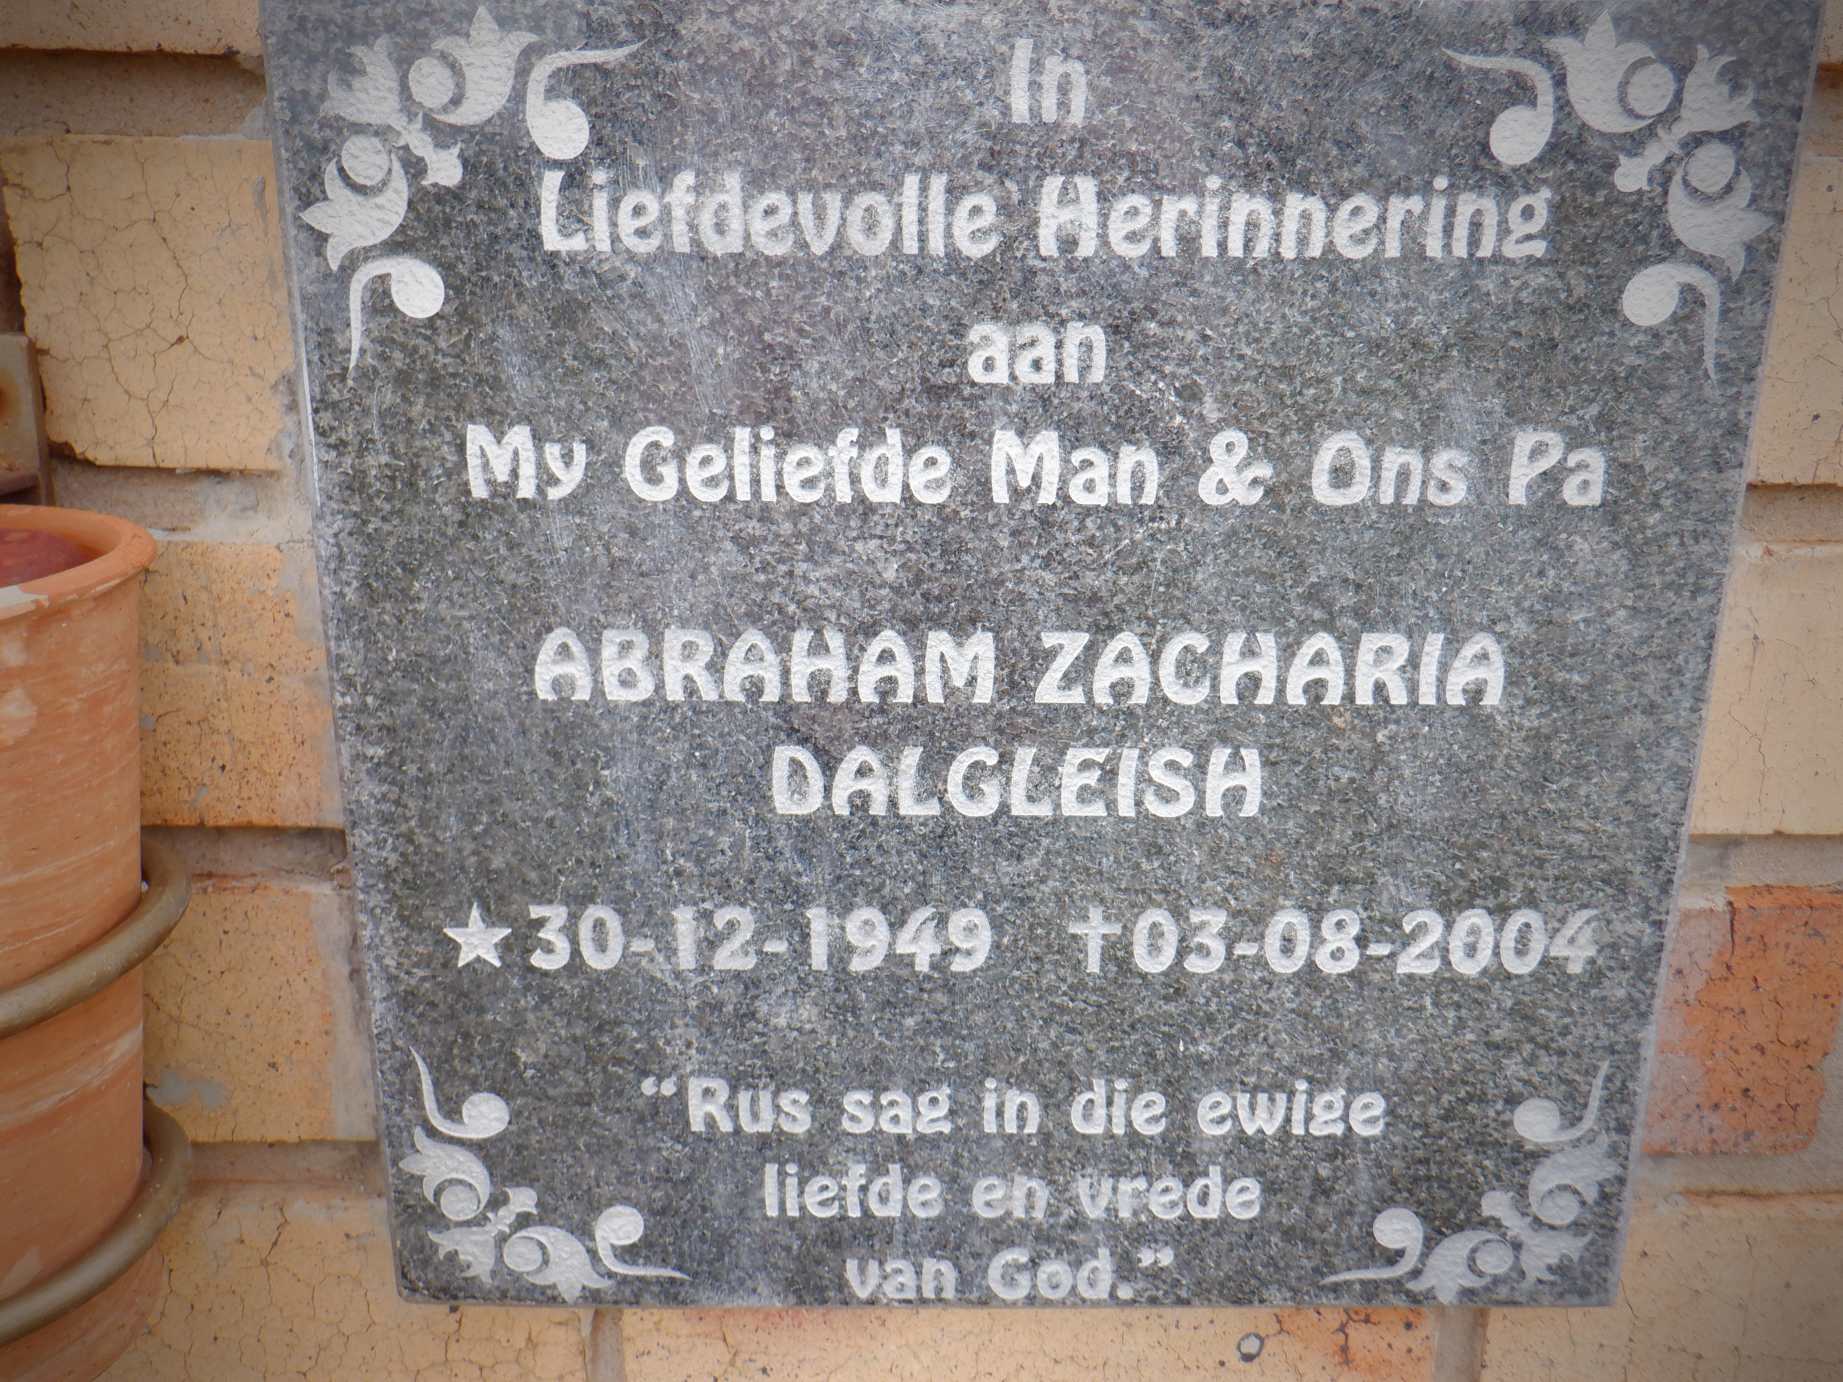 DALGLEISH Abraham Zacharia 1949-2004